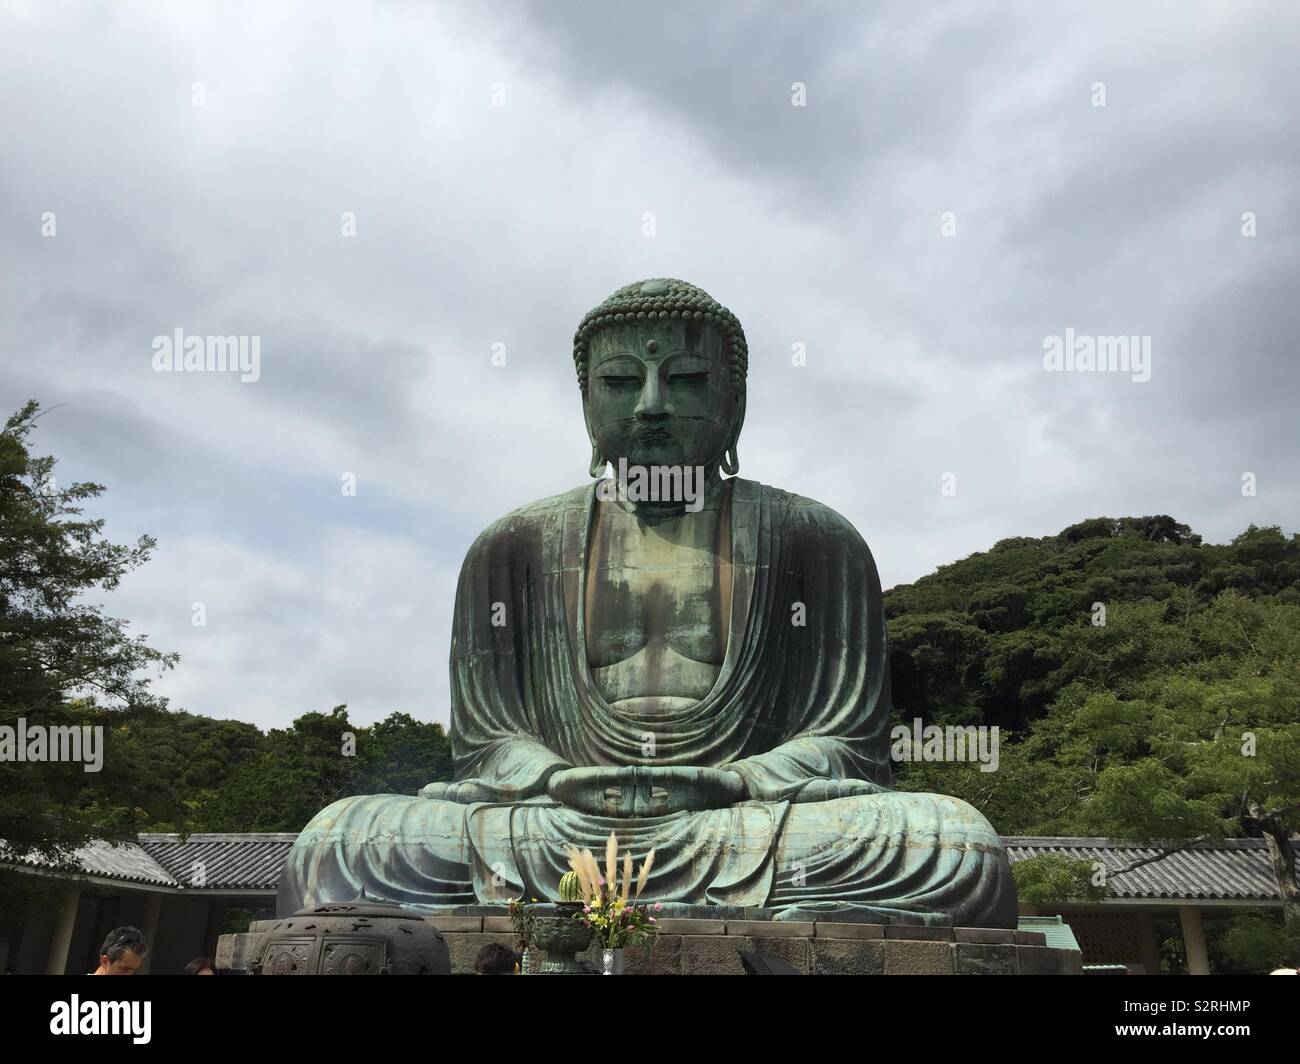 Großen Buddha in Kamakura, Japan, August 2016. Aus Bronze, gegossen im Jahre 1252 gemacht, die Statue war einmal geschützt, sondern hat in der offenen Luft seit dem 1500. Es ist die zweitgrößte in Japan. Stockfoto